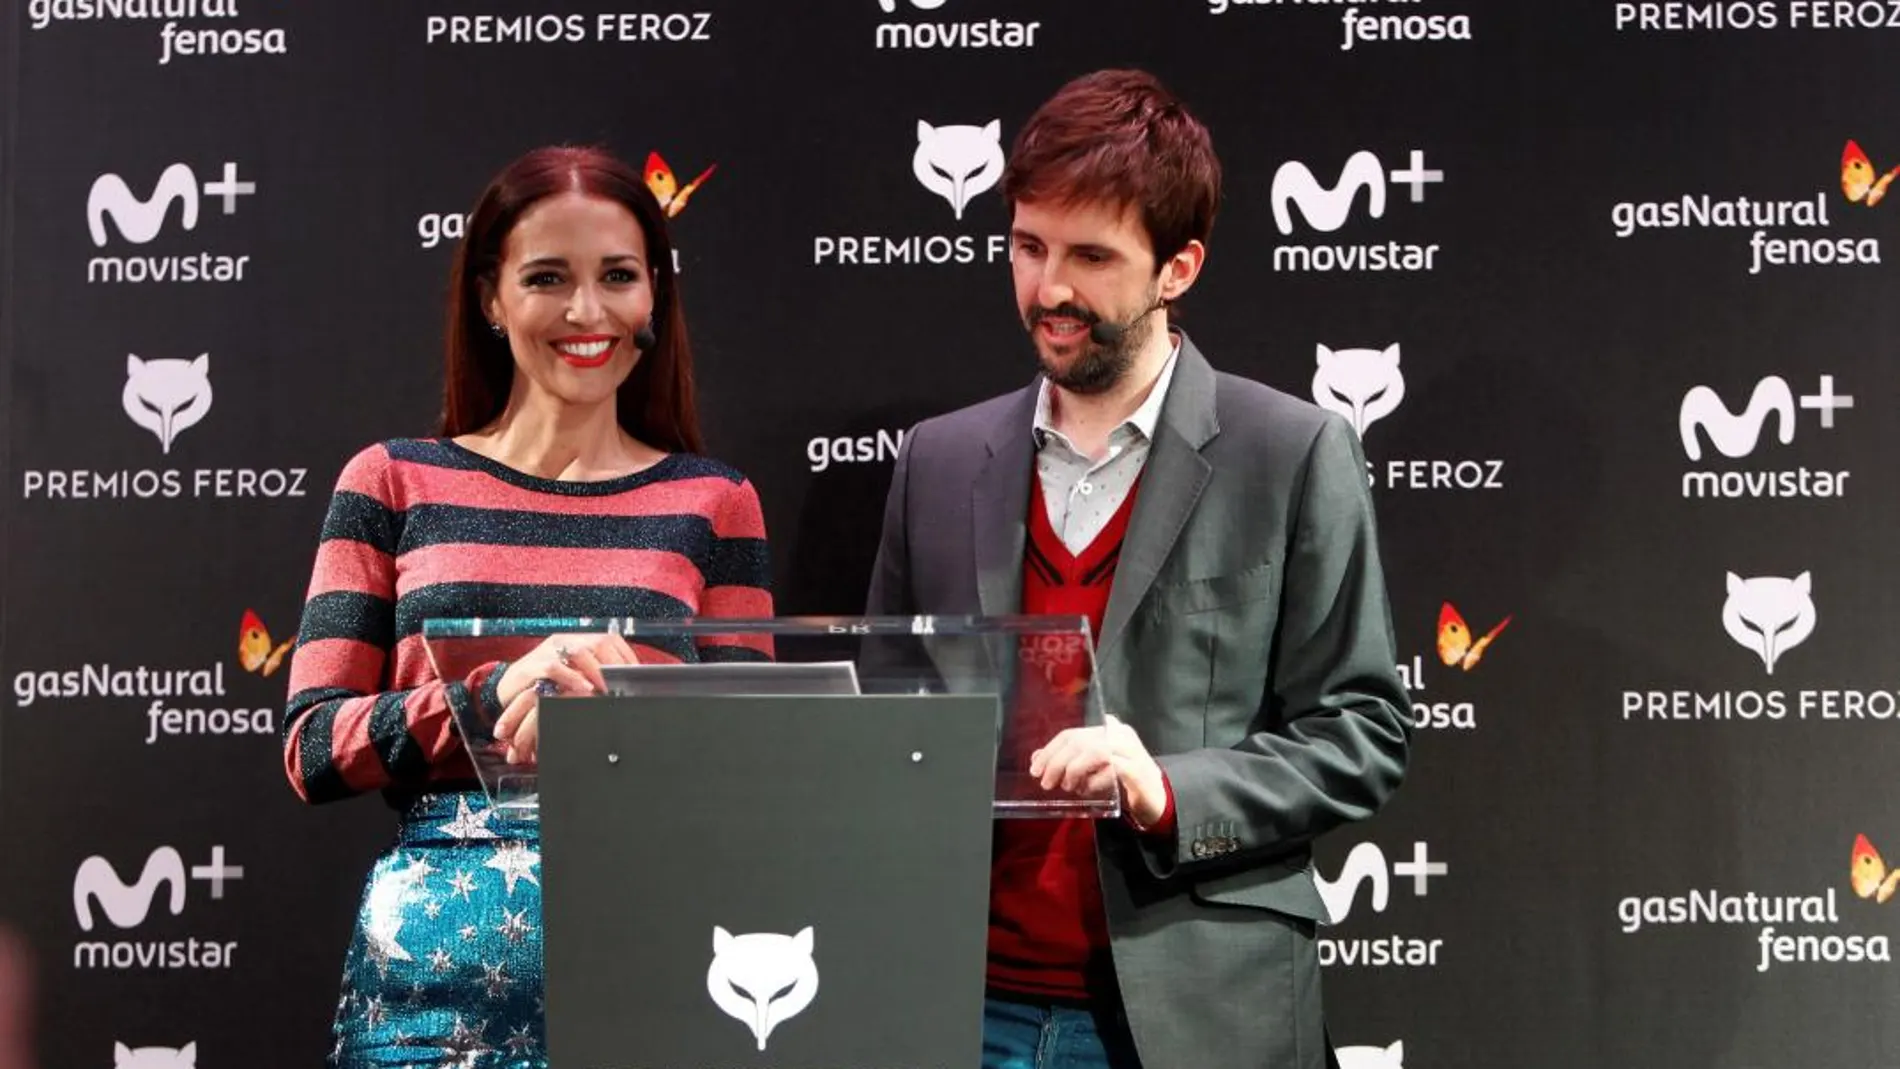 El actor Julián López y la actriz Paula Echevarría anuncian las películas y series que concurrirán a la quinta edición de los Premios Feroz que otorgan los periodistas cinematográficos, esta mañana en Madrid